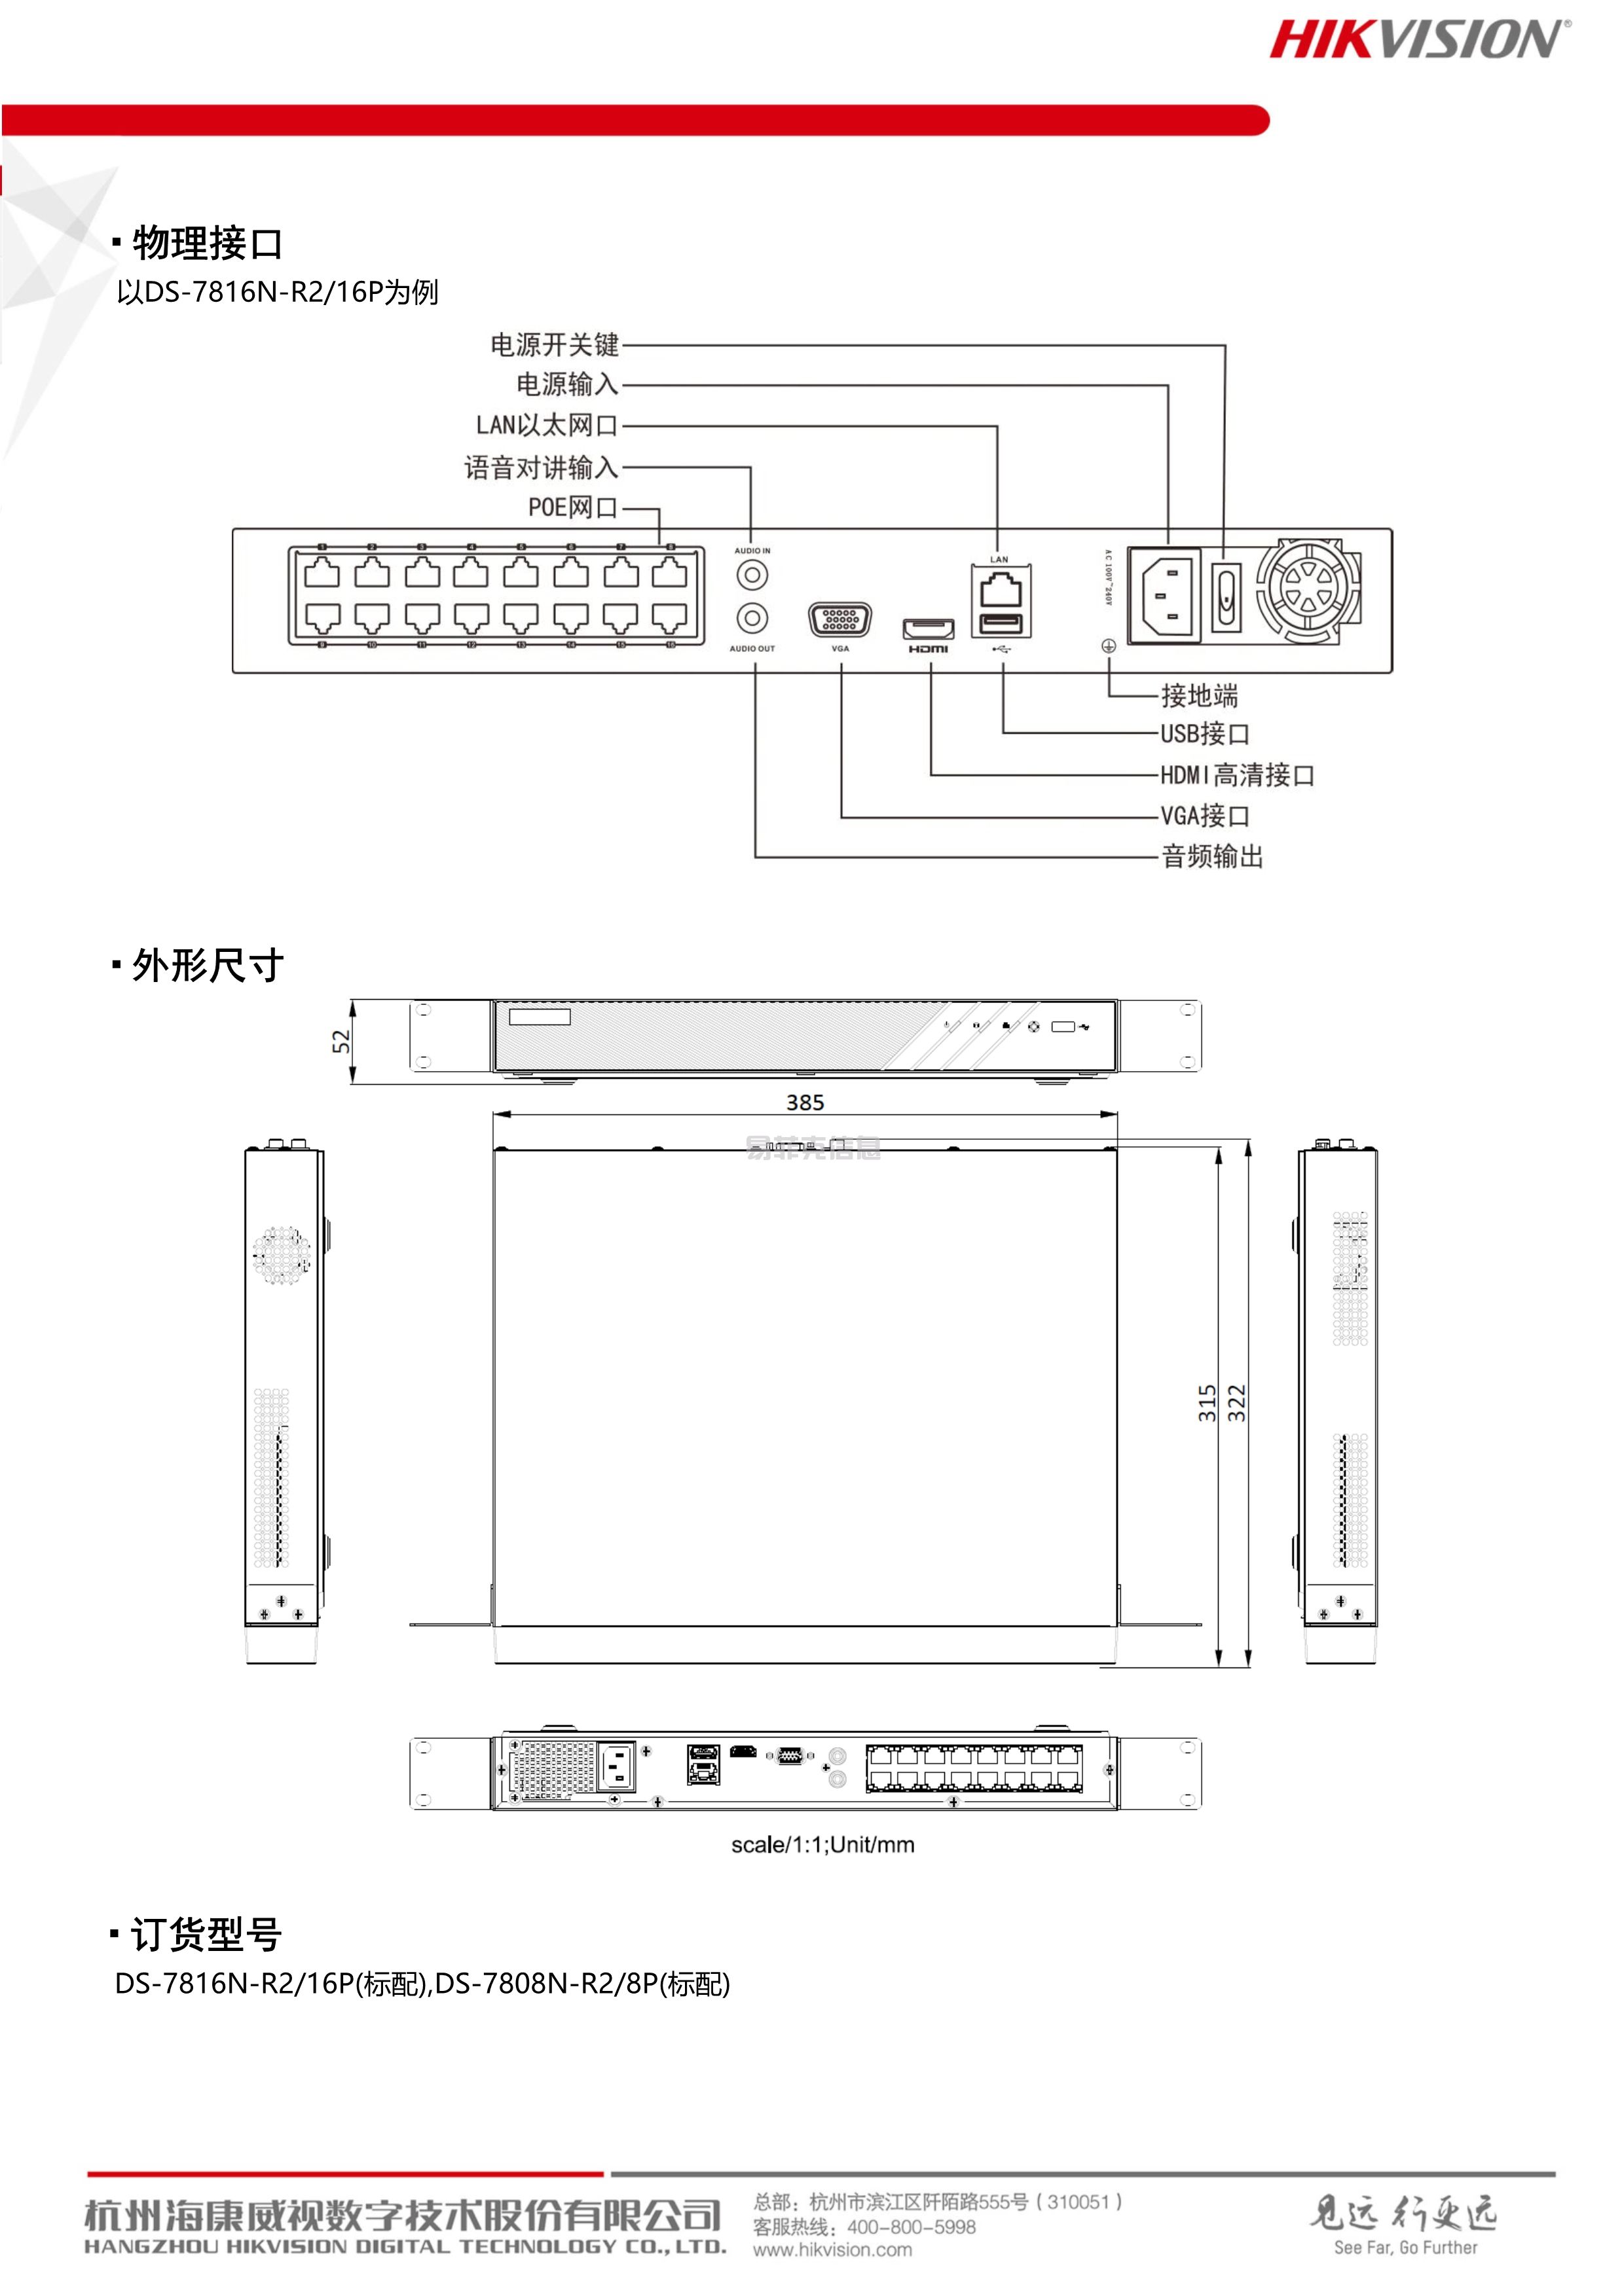 硬盘录像机(NVR)/DS-7804N-R2/4P(图3)